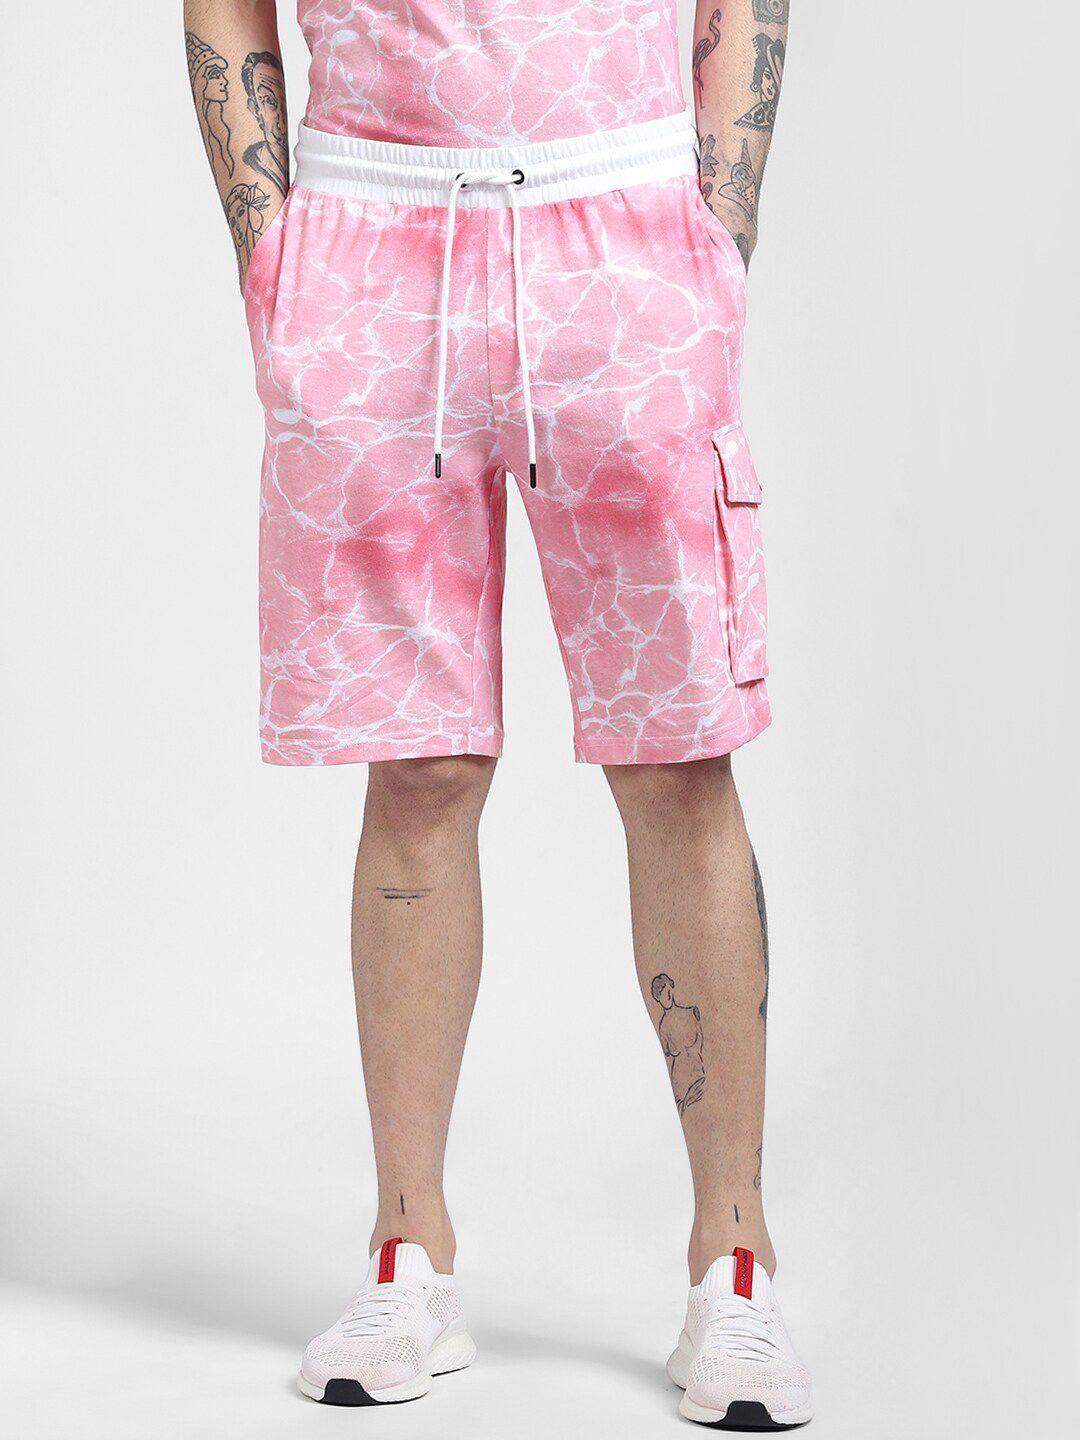 jack & jones men pink printed mid rise cotton regular shorts